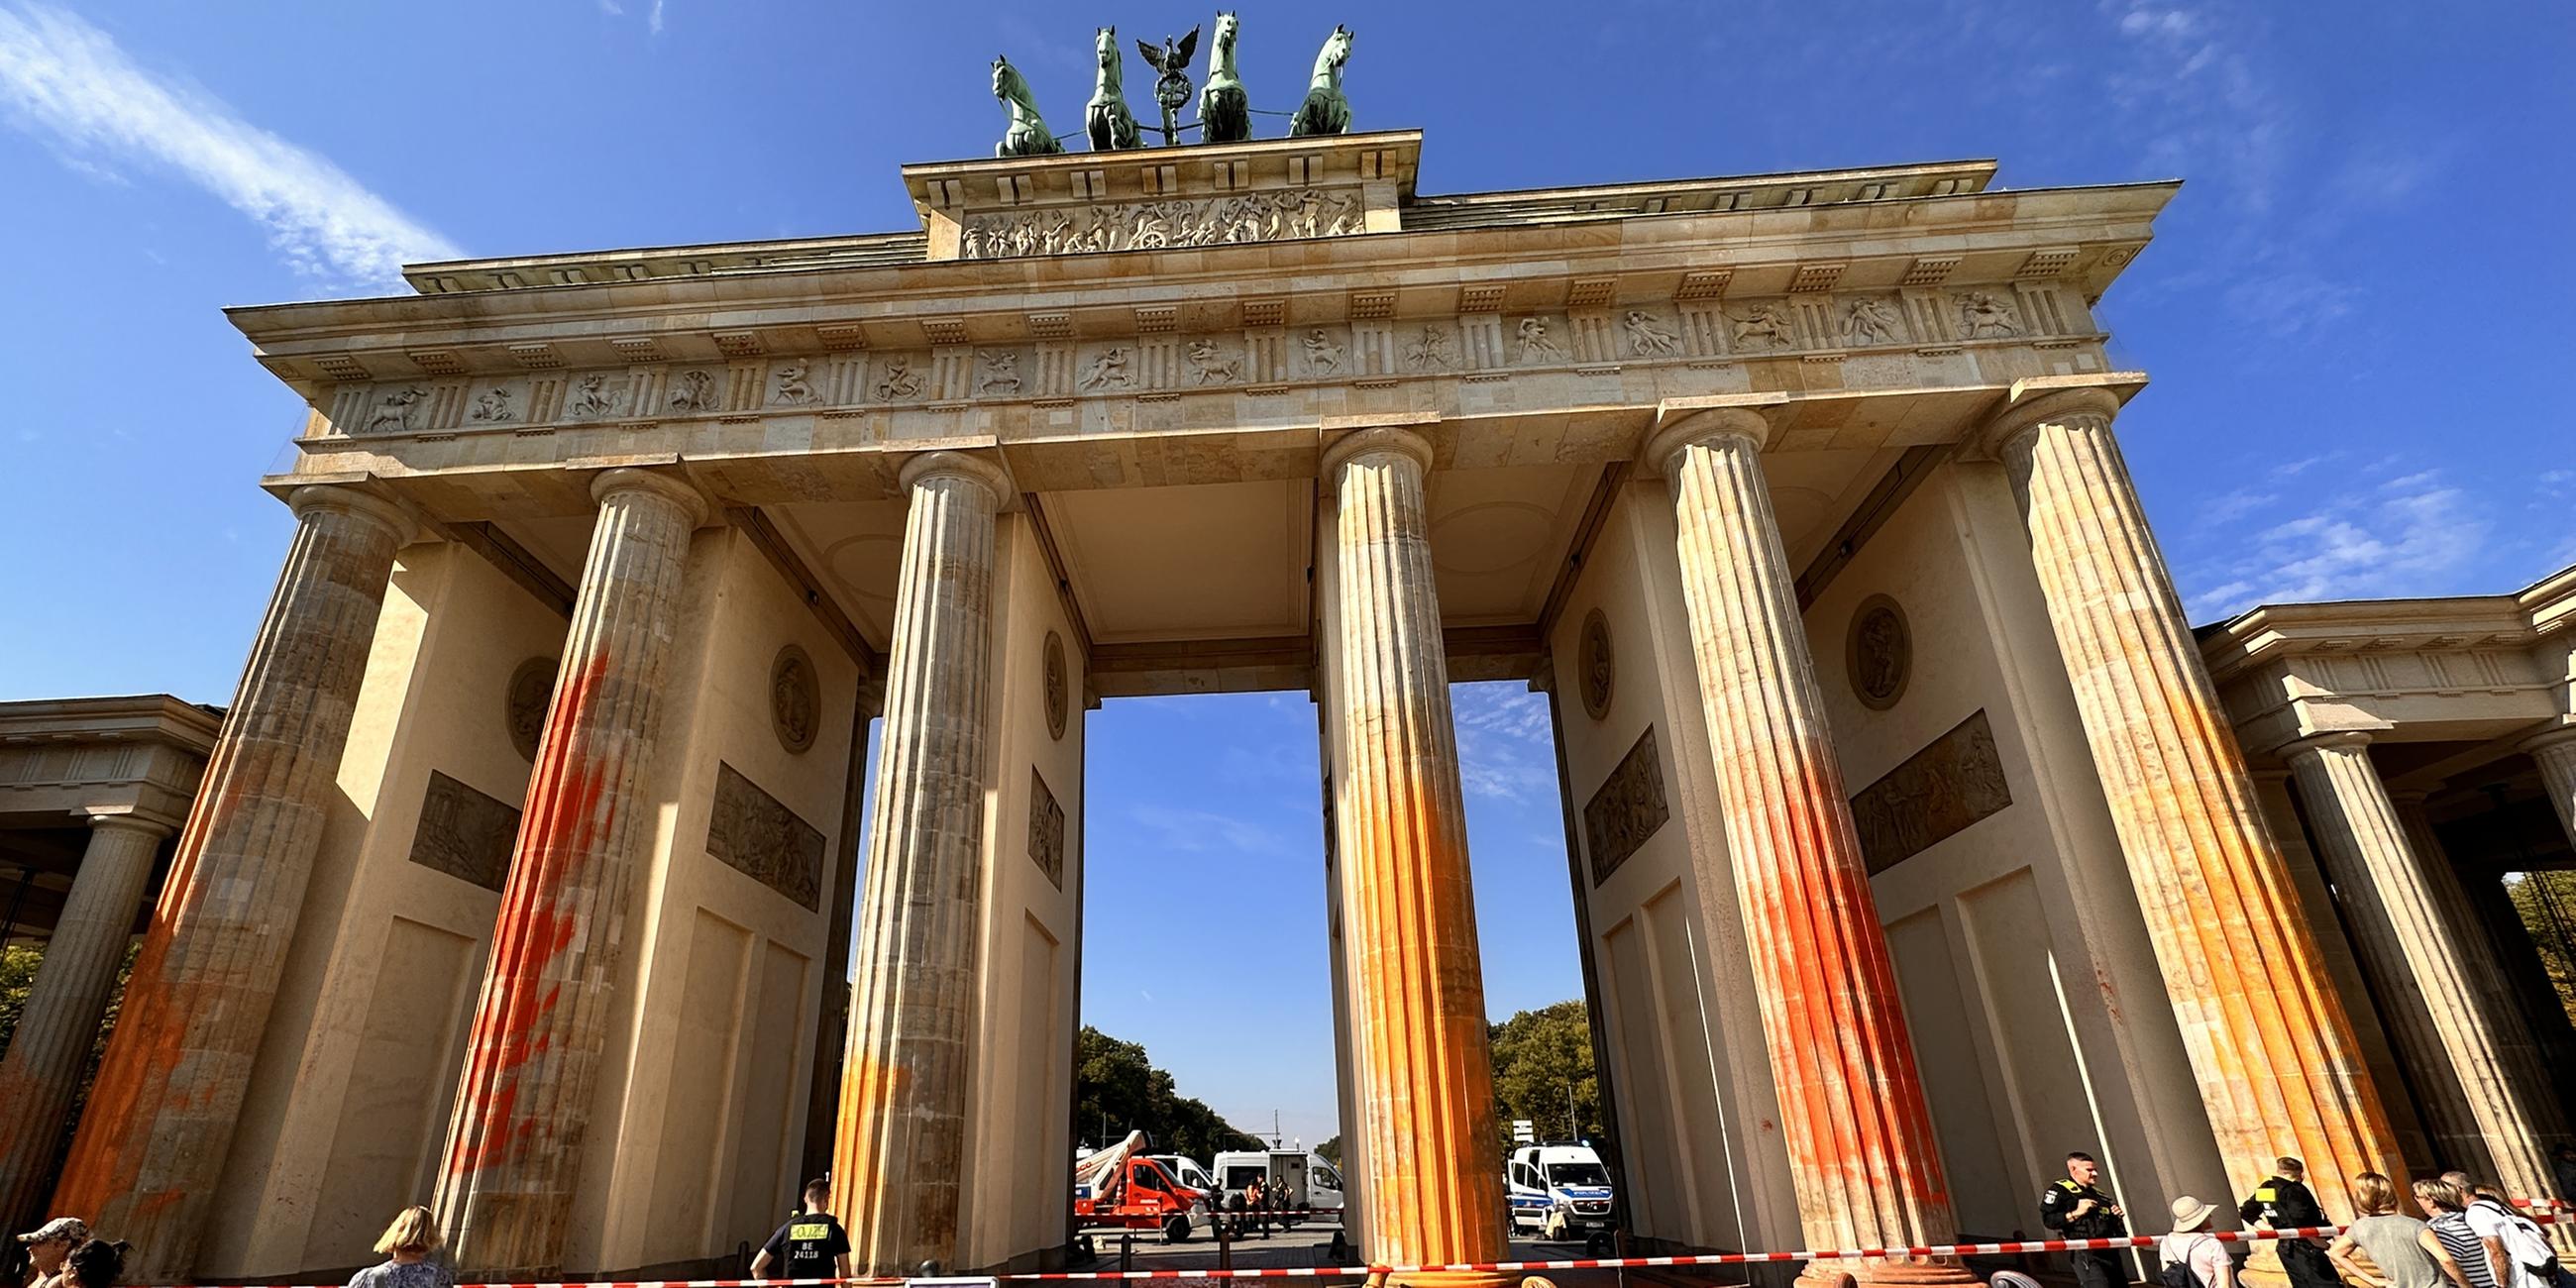 Mitglieder der Klimaschutzgruppe "Letzte Generation" haben das Brandenburger Tor in Berlin mit oranger Farbe angesprüht. 